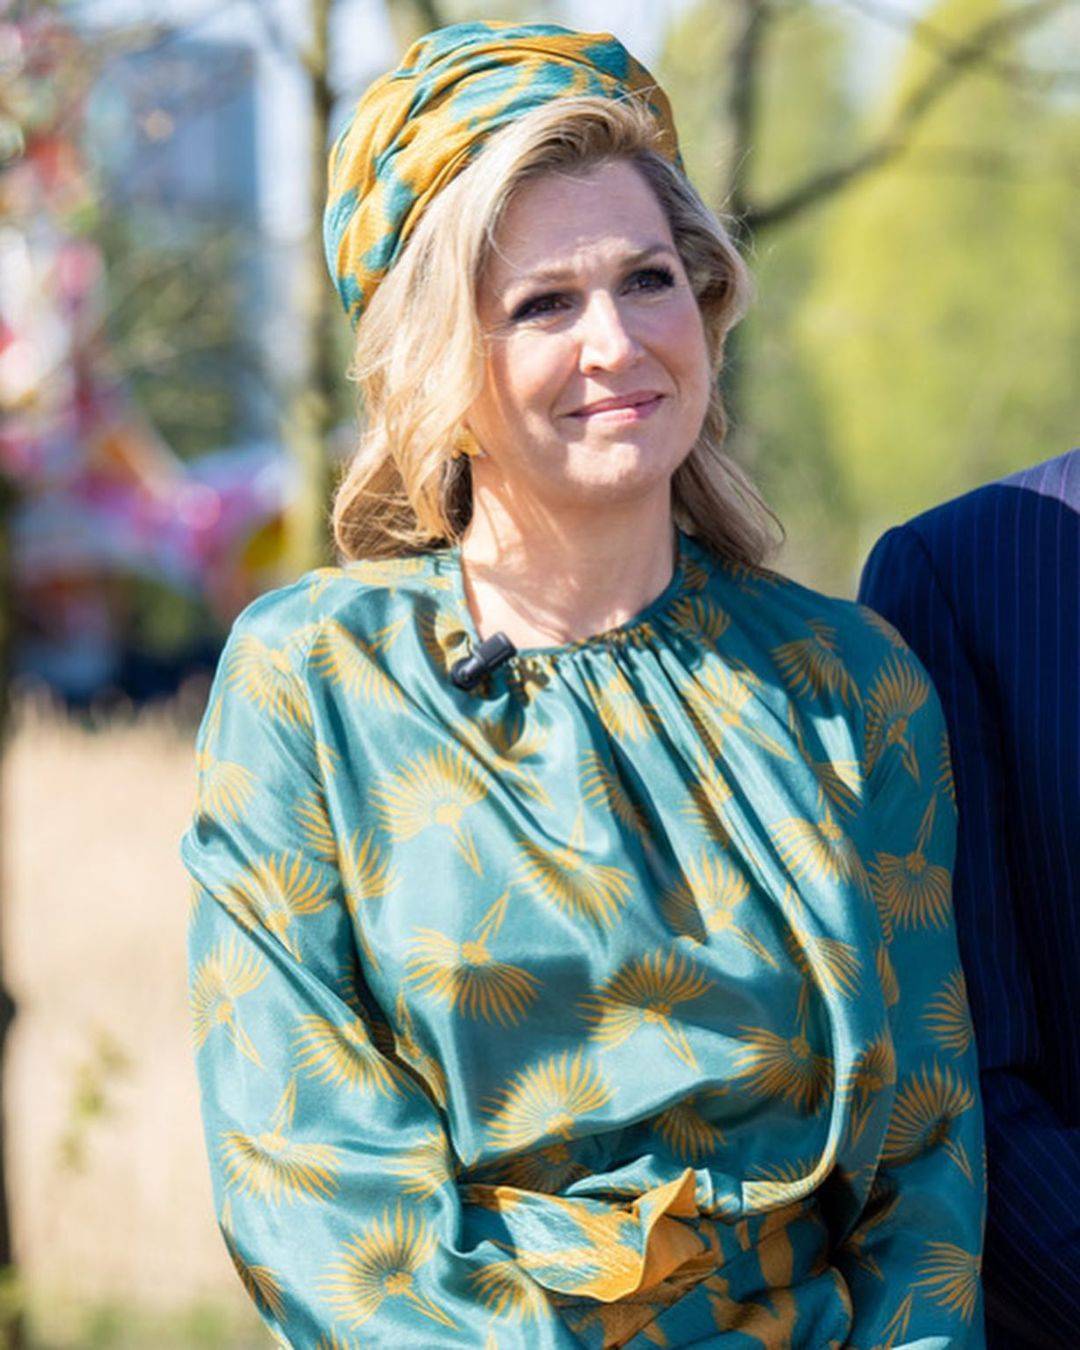 荷兰王室齐聚,一家五口颜值似复刻,200斤大公主穿阔腿裤太笨重